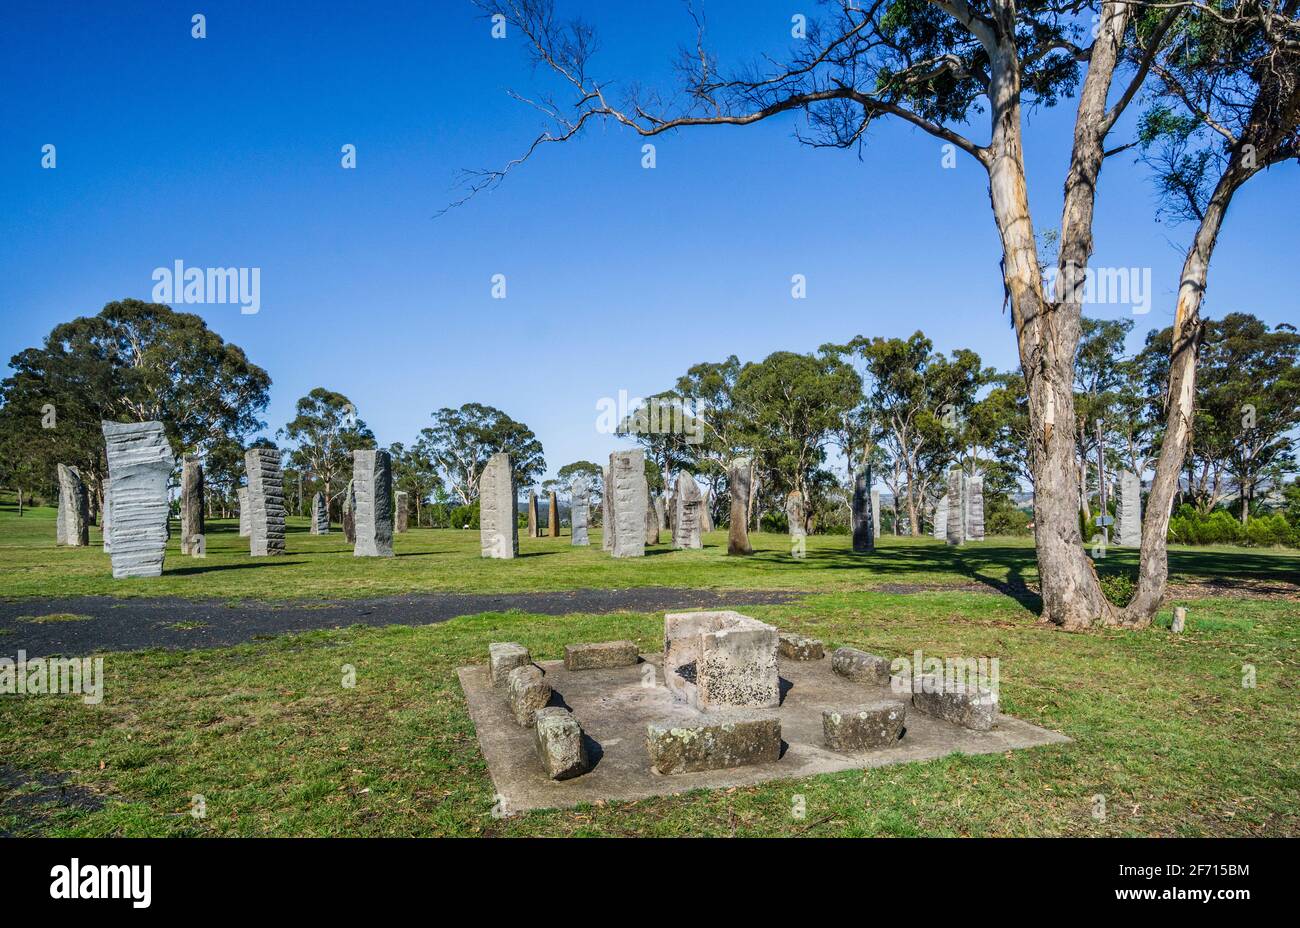 Le pietre permanenti australiane, erette nel 1992 a Glen Innes, i monoliti rendono omaggio al patrimonio celtico dei primi coloni europei Foto Stock